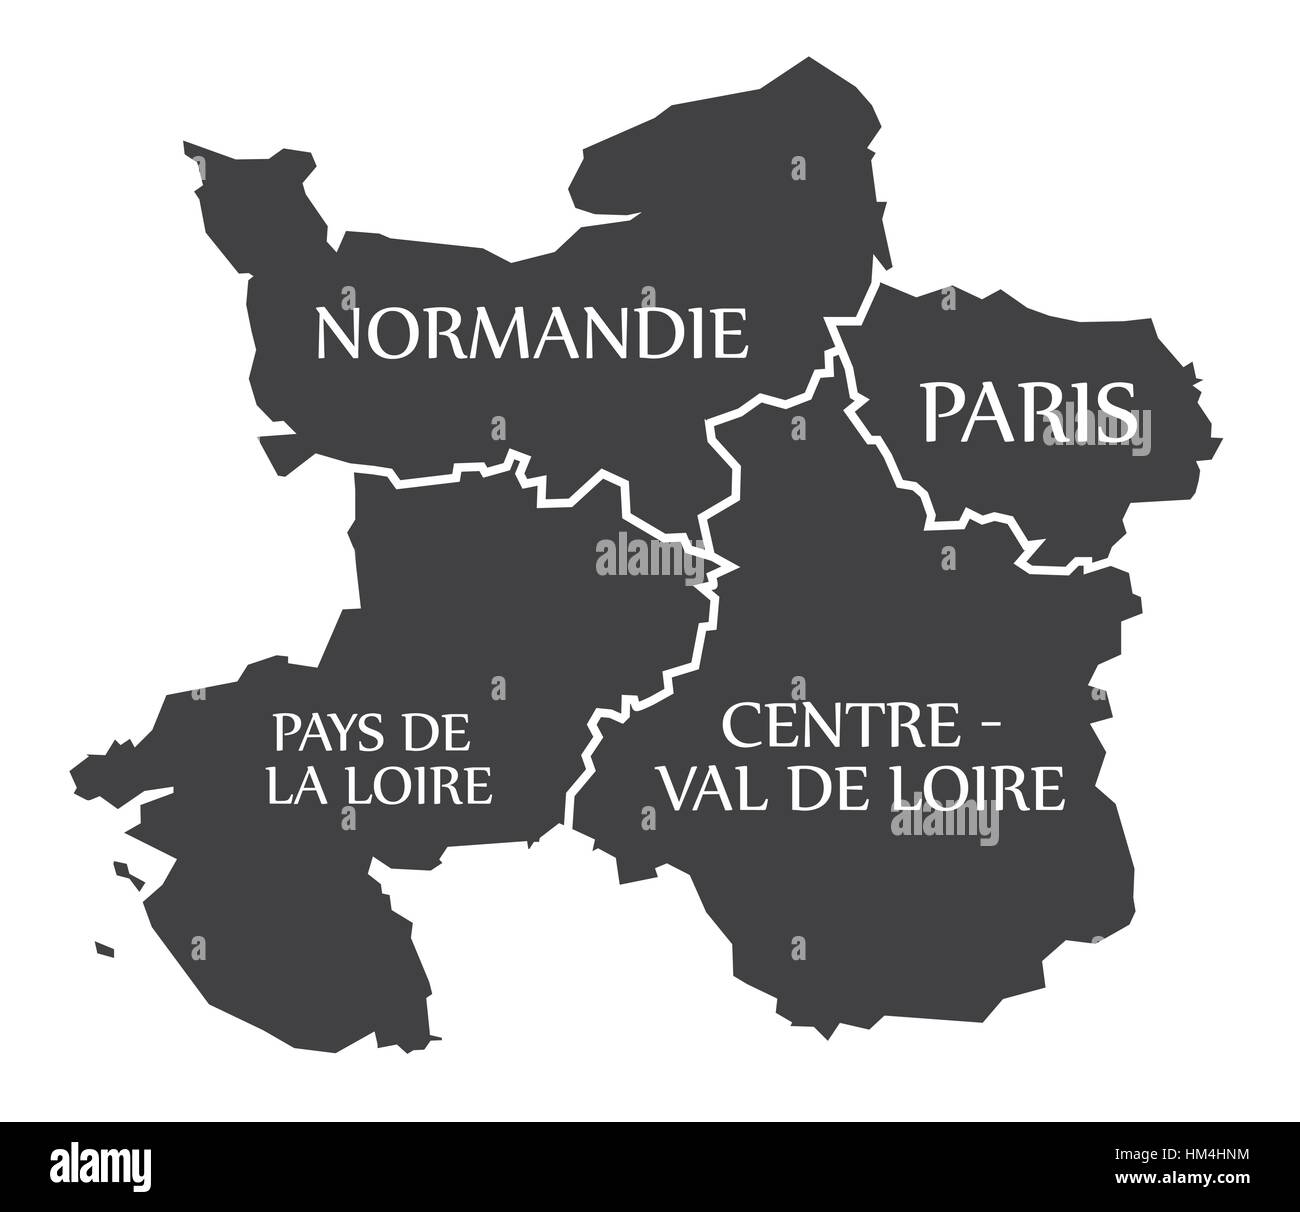 Normandie - Paris - Pays de la Loire - Centro - Val de Loire Francia Mappa immagine Illustrazione Vettoriale